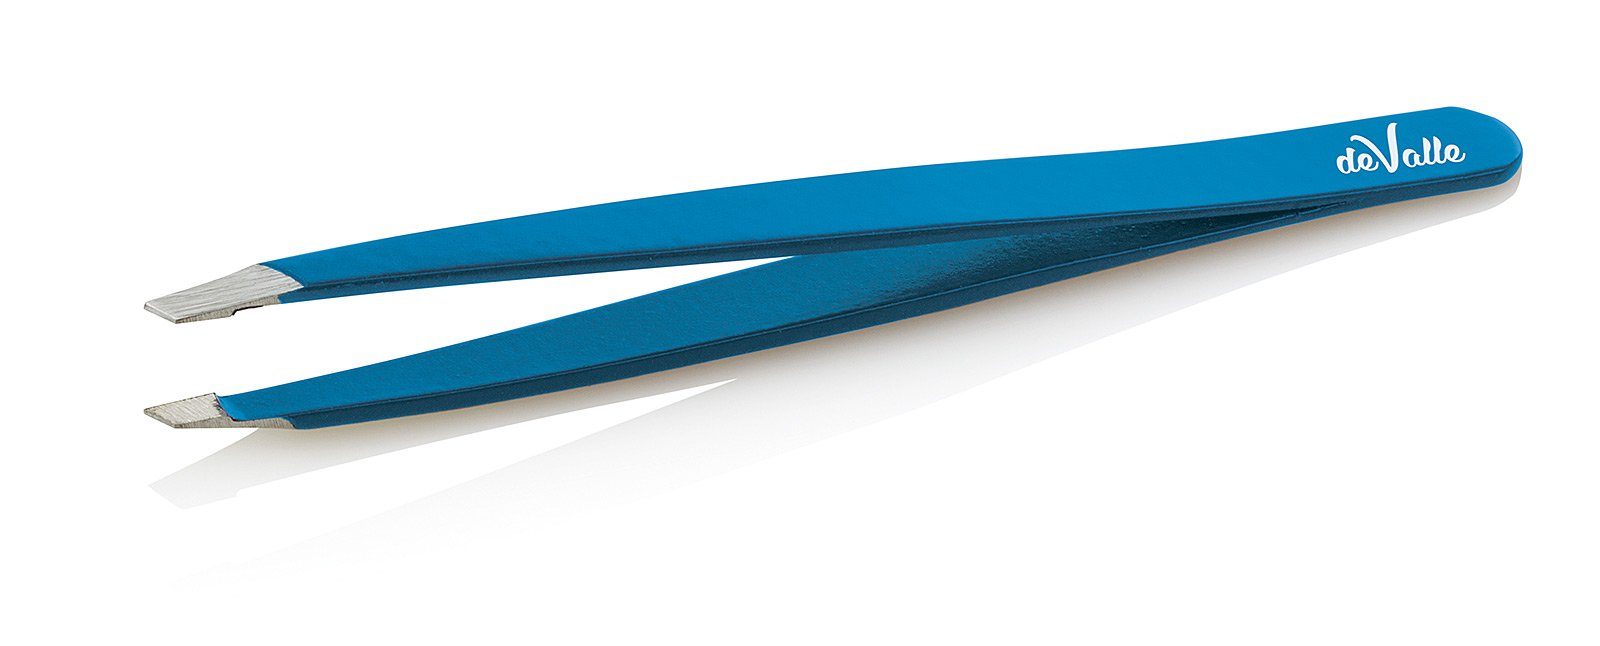 Koskaderm Pinzette Augenbrauenpinzette, farbig, 9.5 cm, deValle Blau | Pinzetten